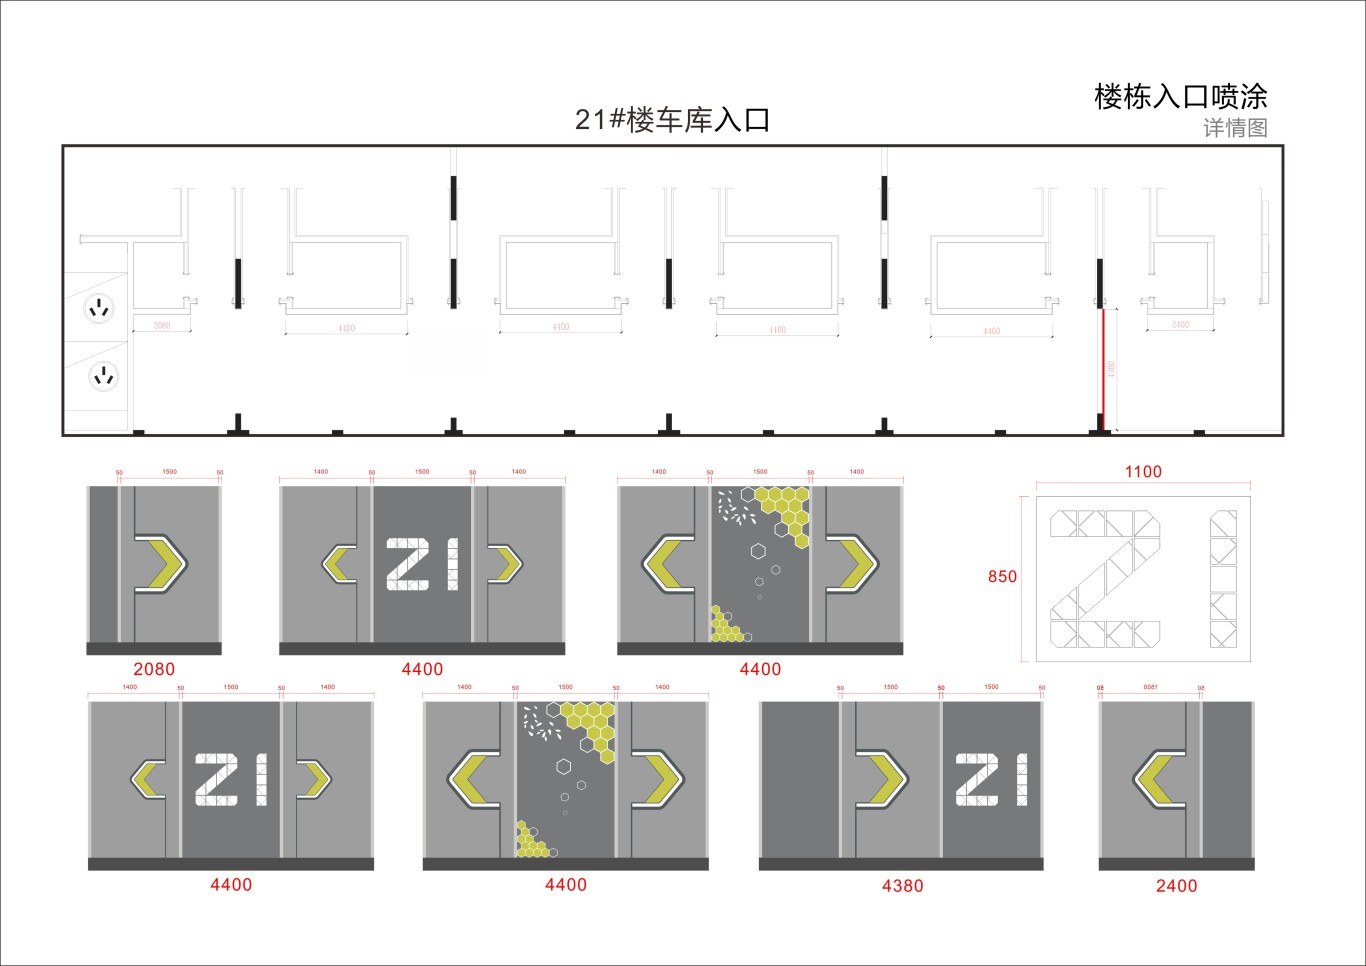 金茂地产 杭州项目地库美化设计图30